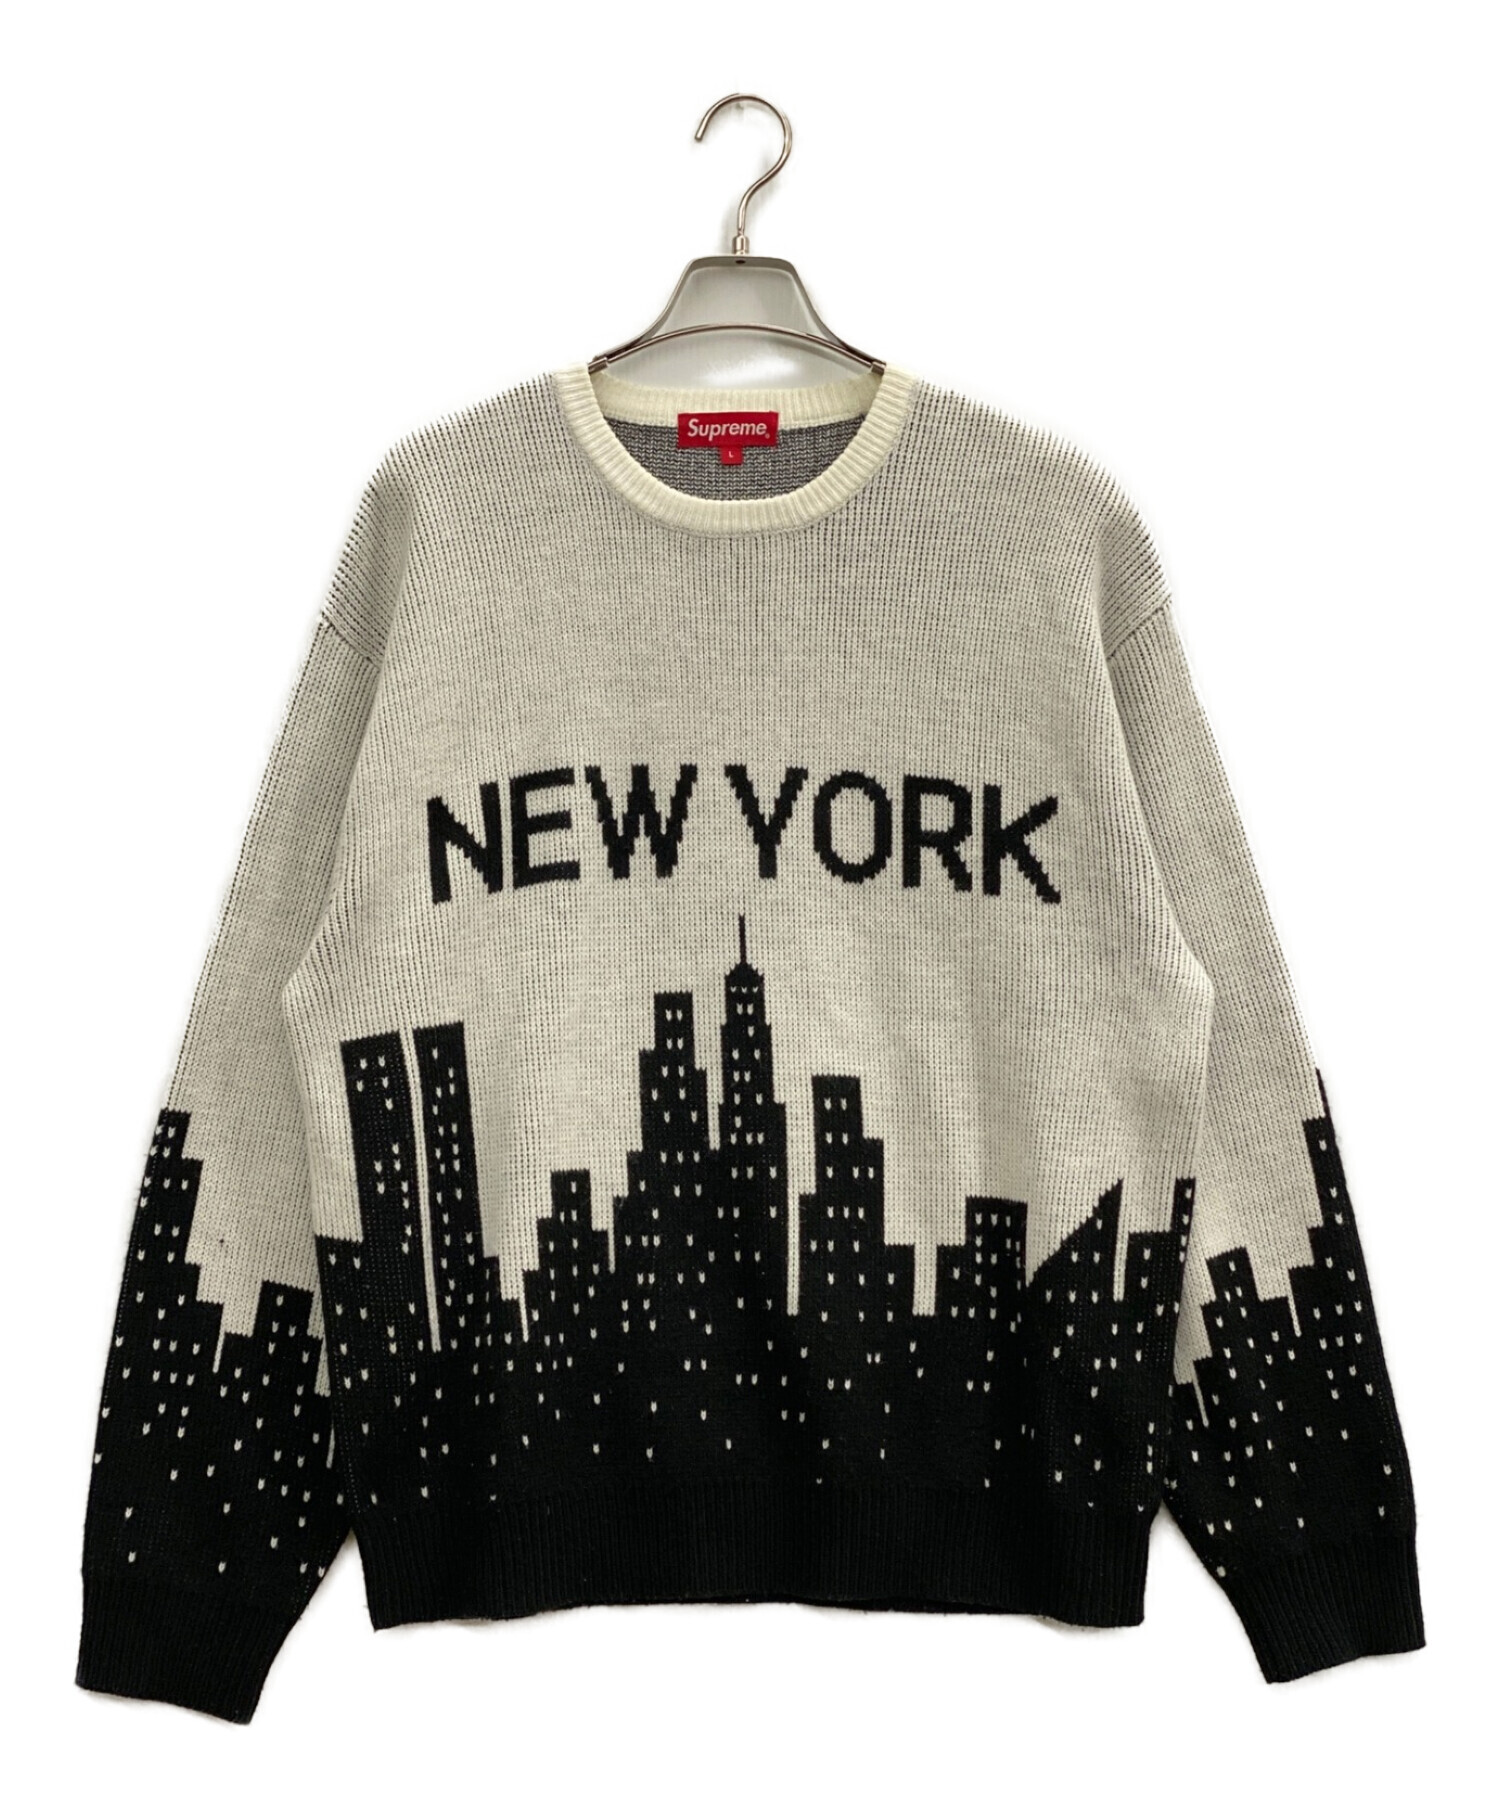 特価低価Supreme NEW YORK Sweater L ニット/セーター